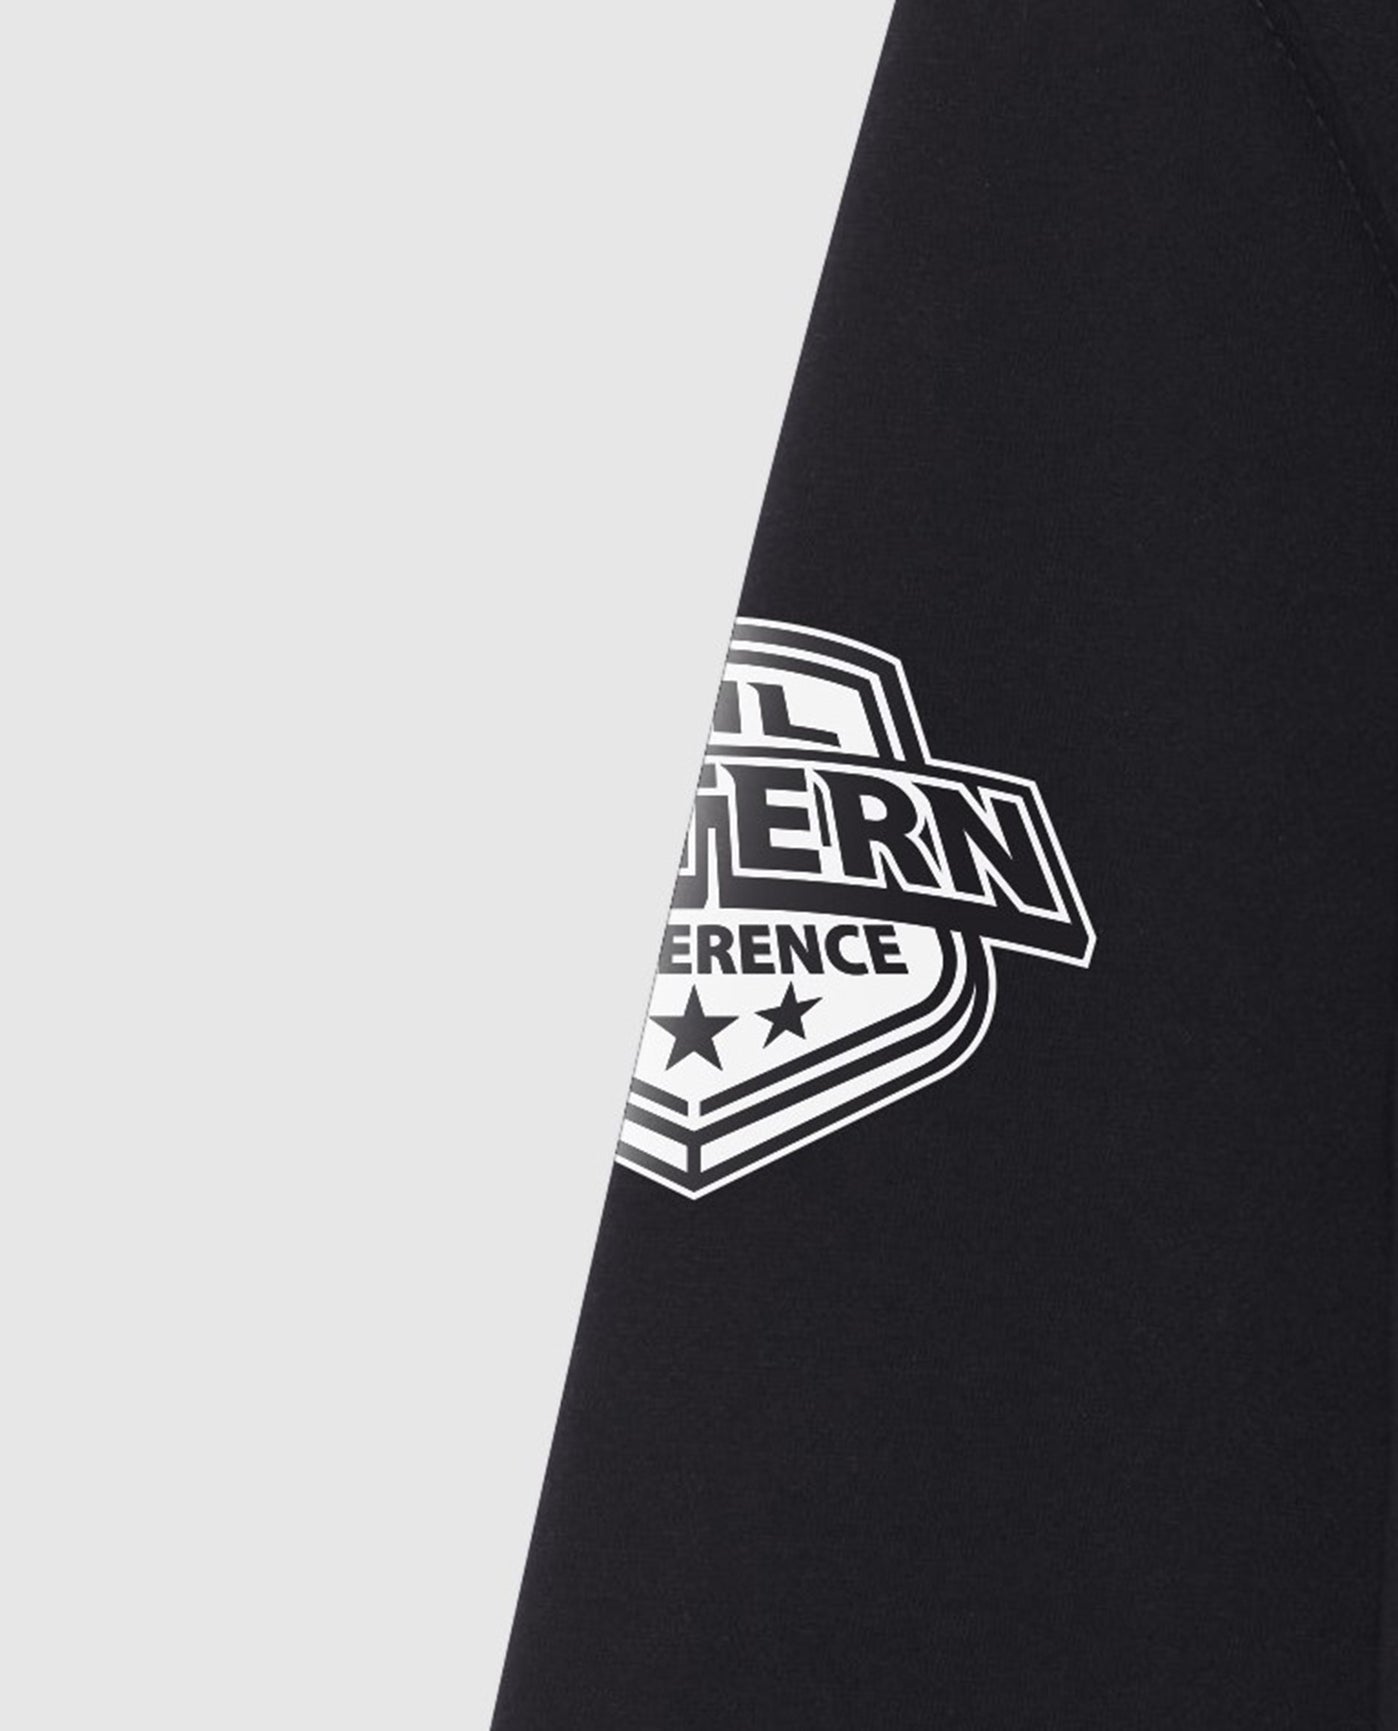 Conference Logo On Sleeve Of New York Islanders Hat Trick Hoodie | Black